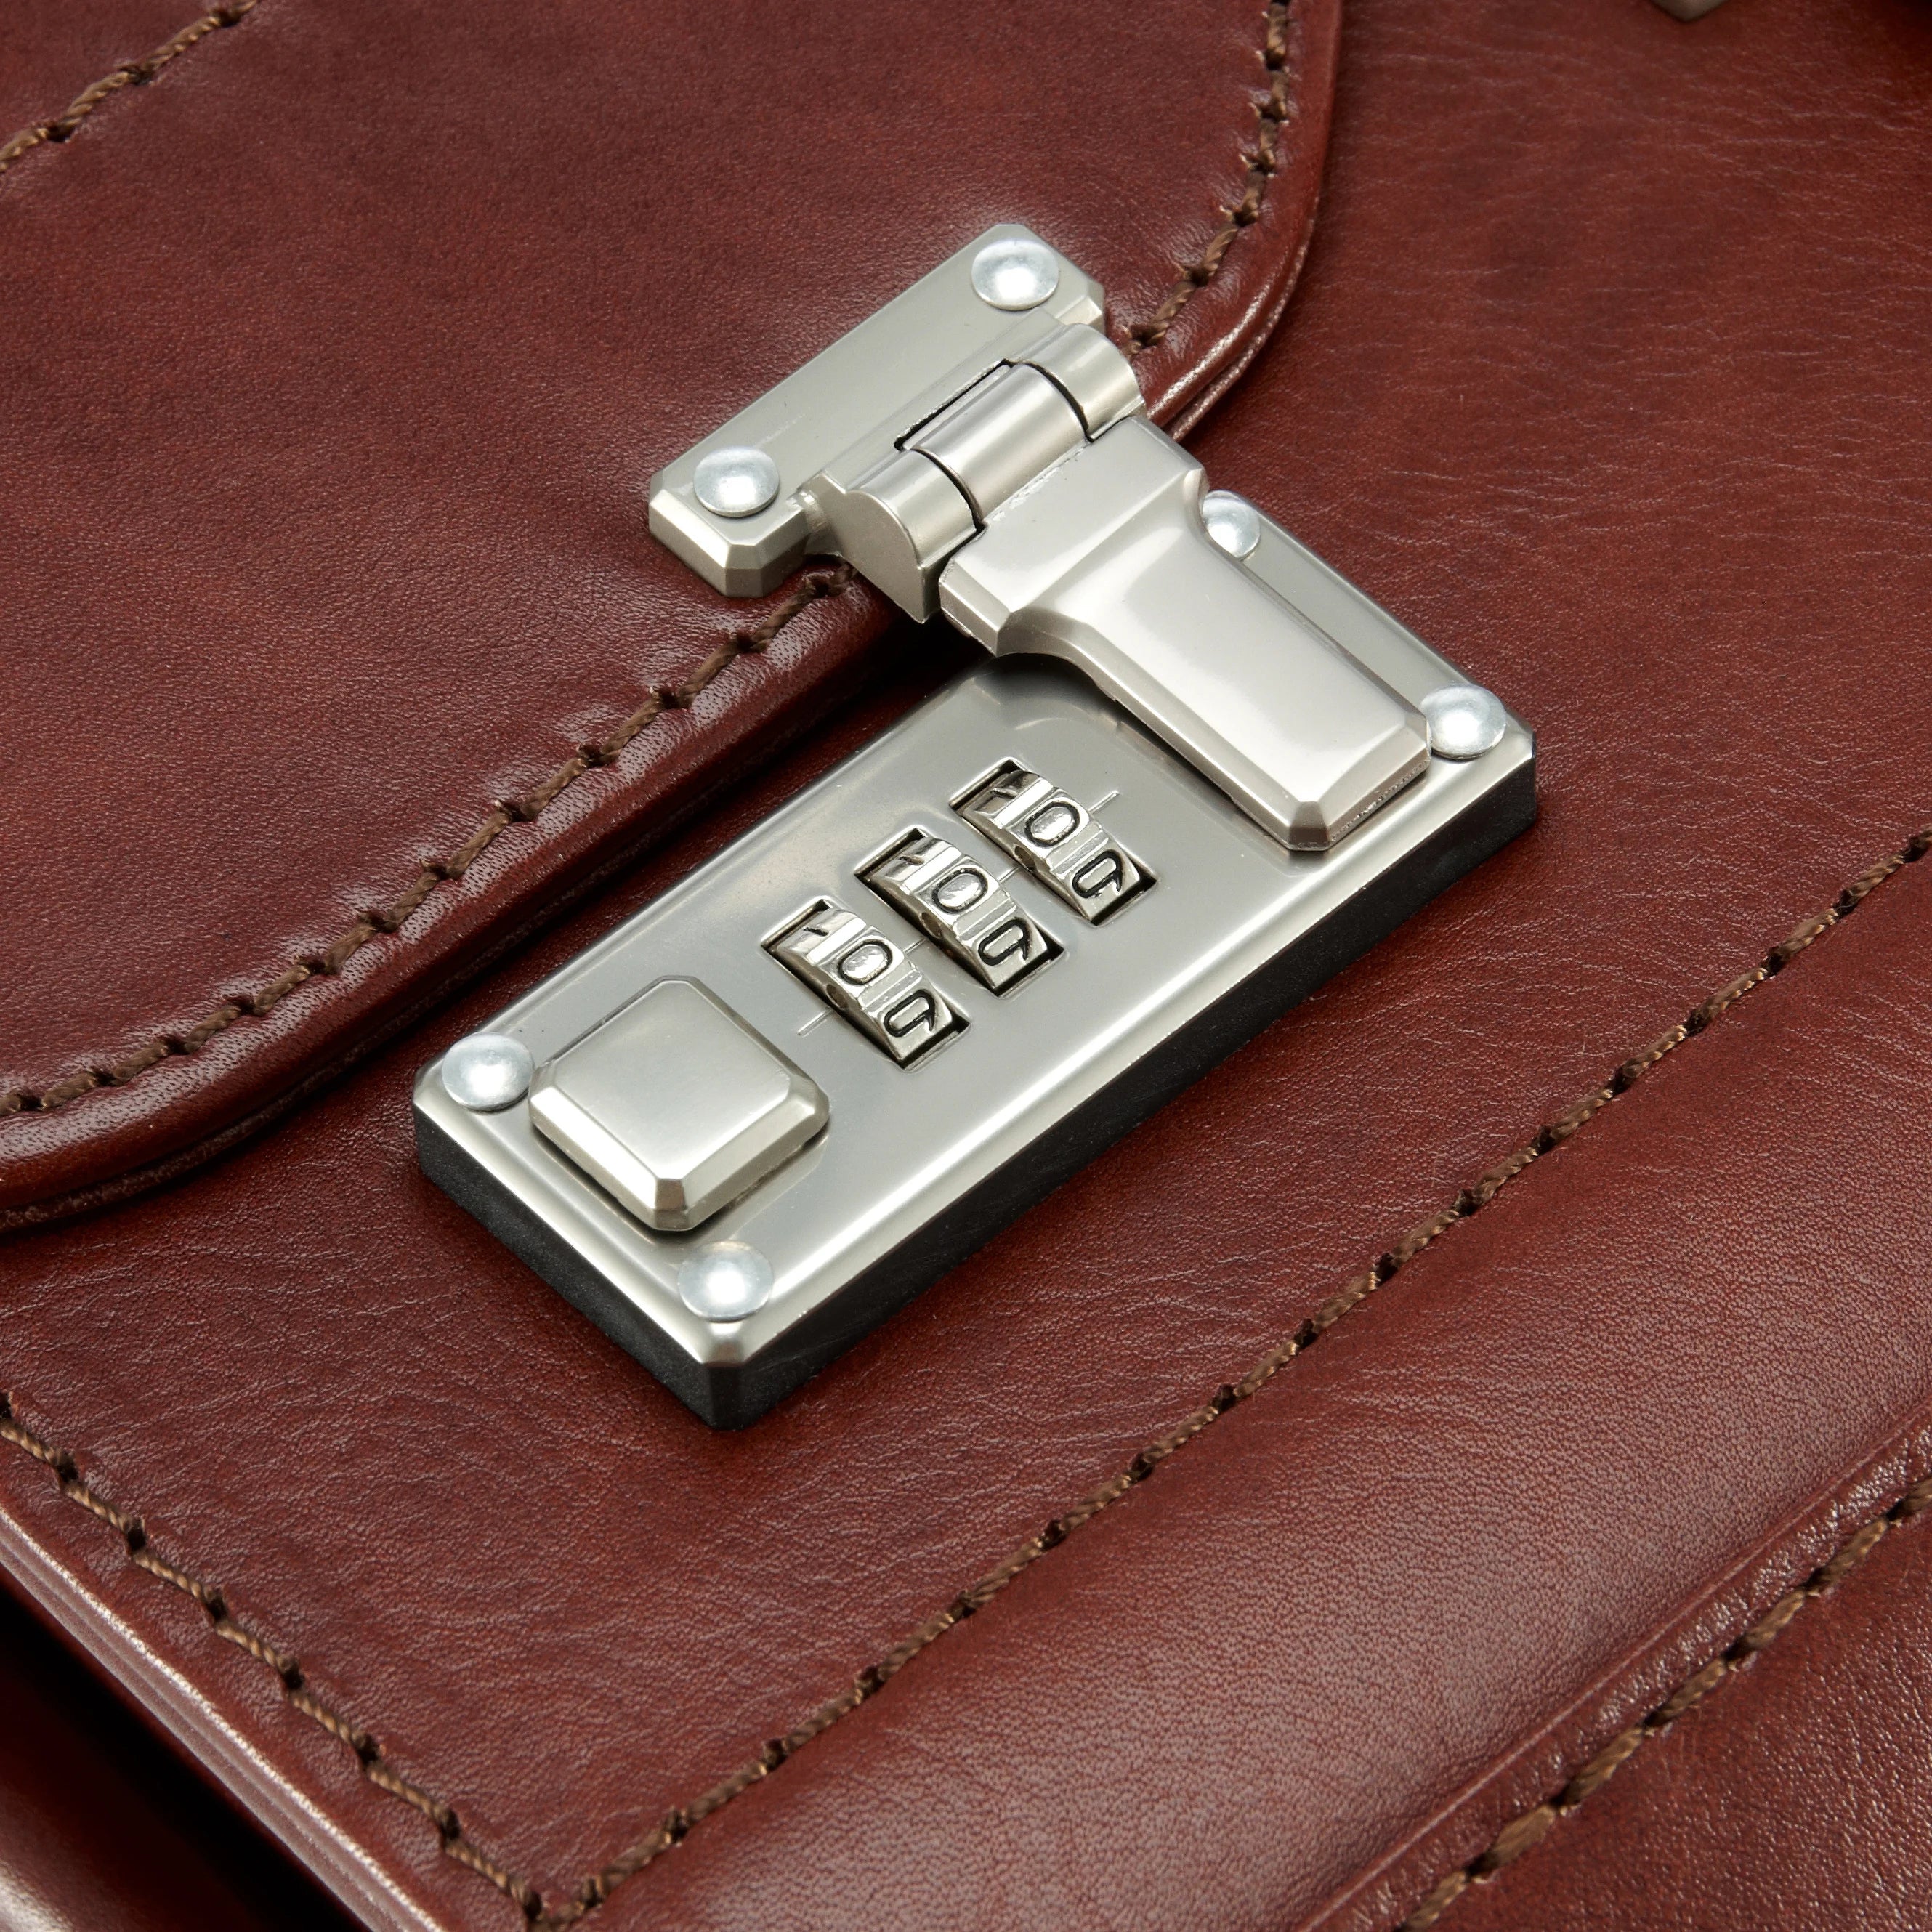 Dermata Business pilot case leather 45 cm - cognac